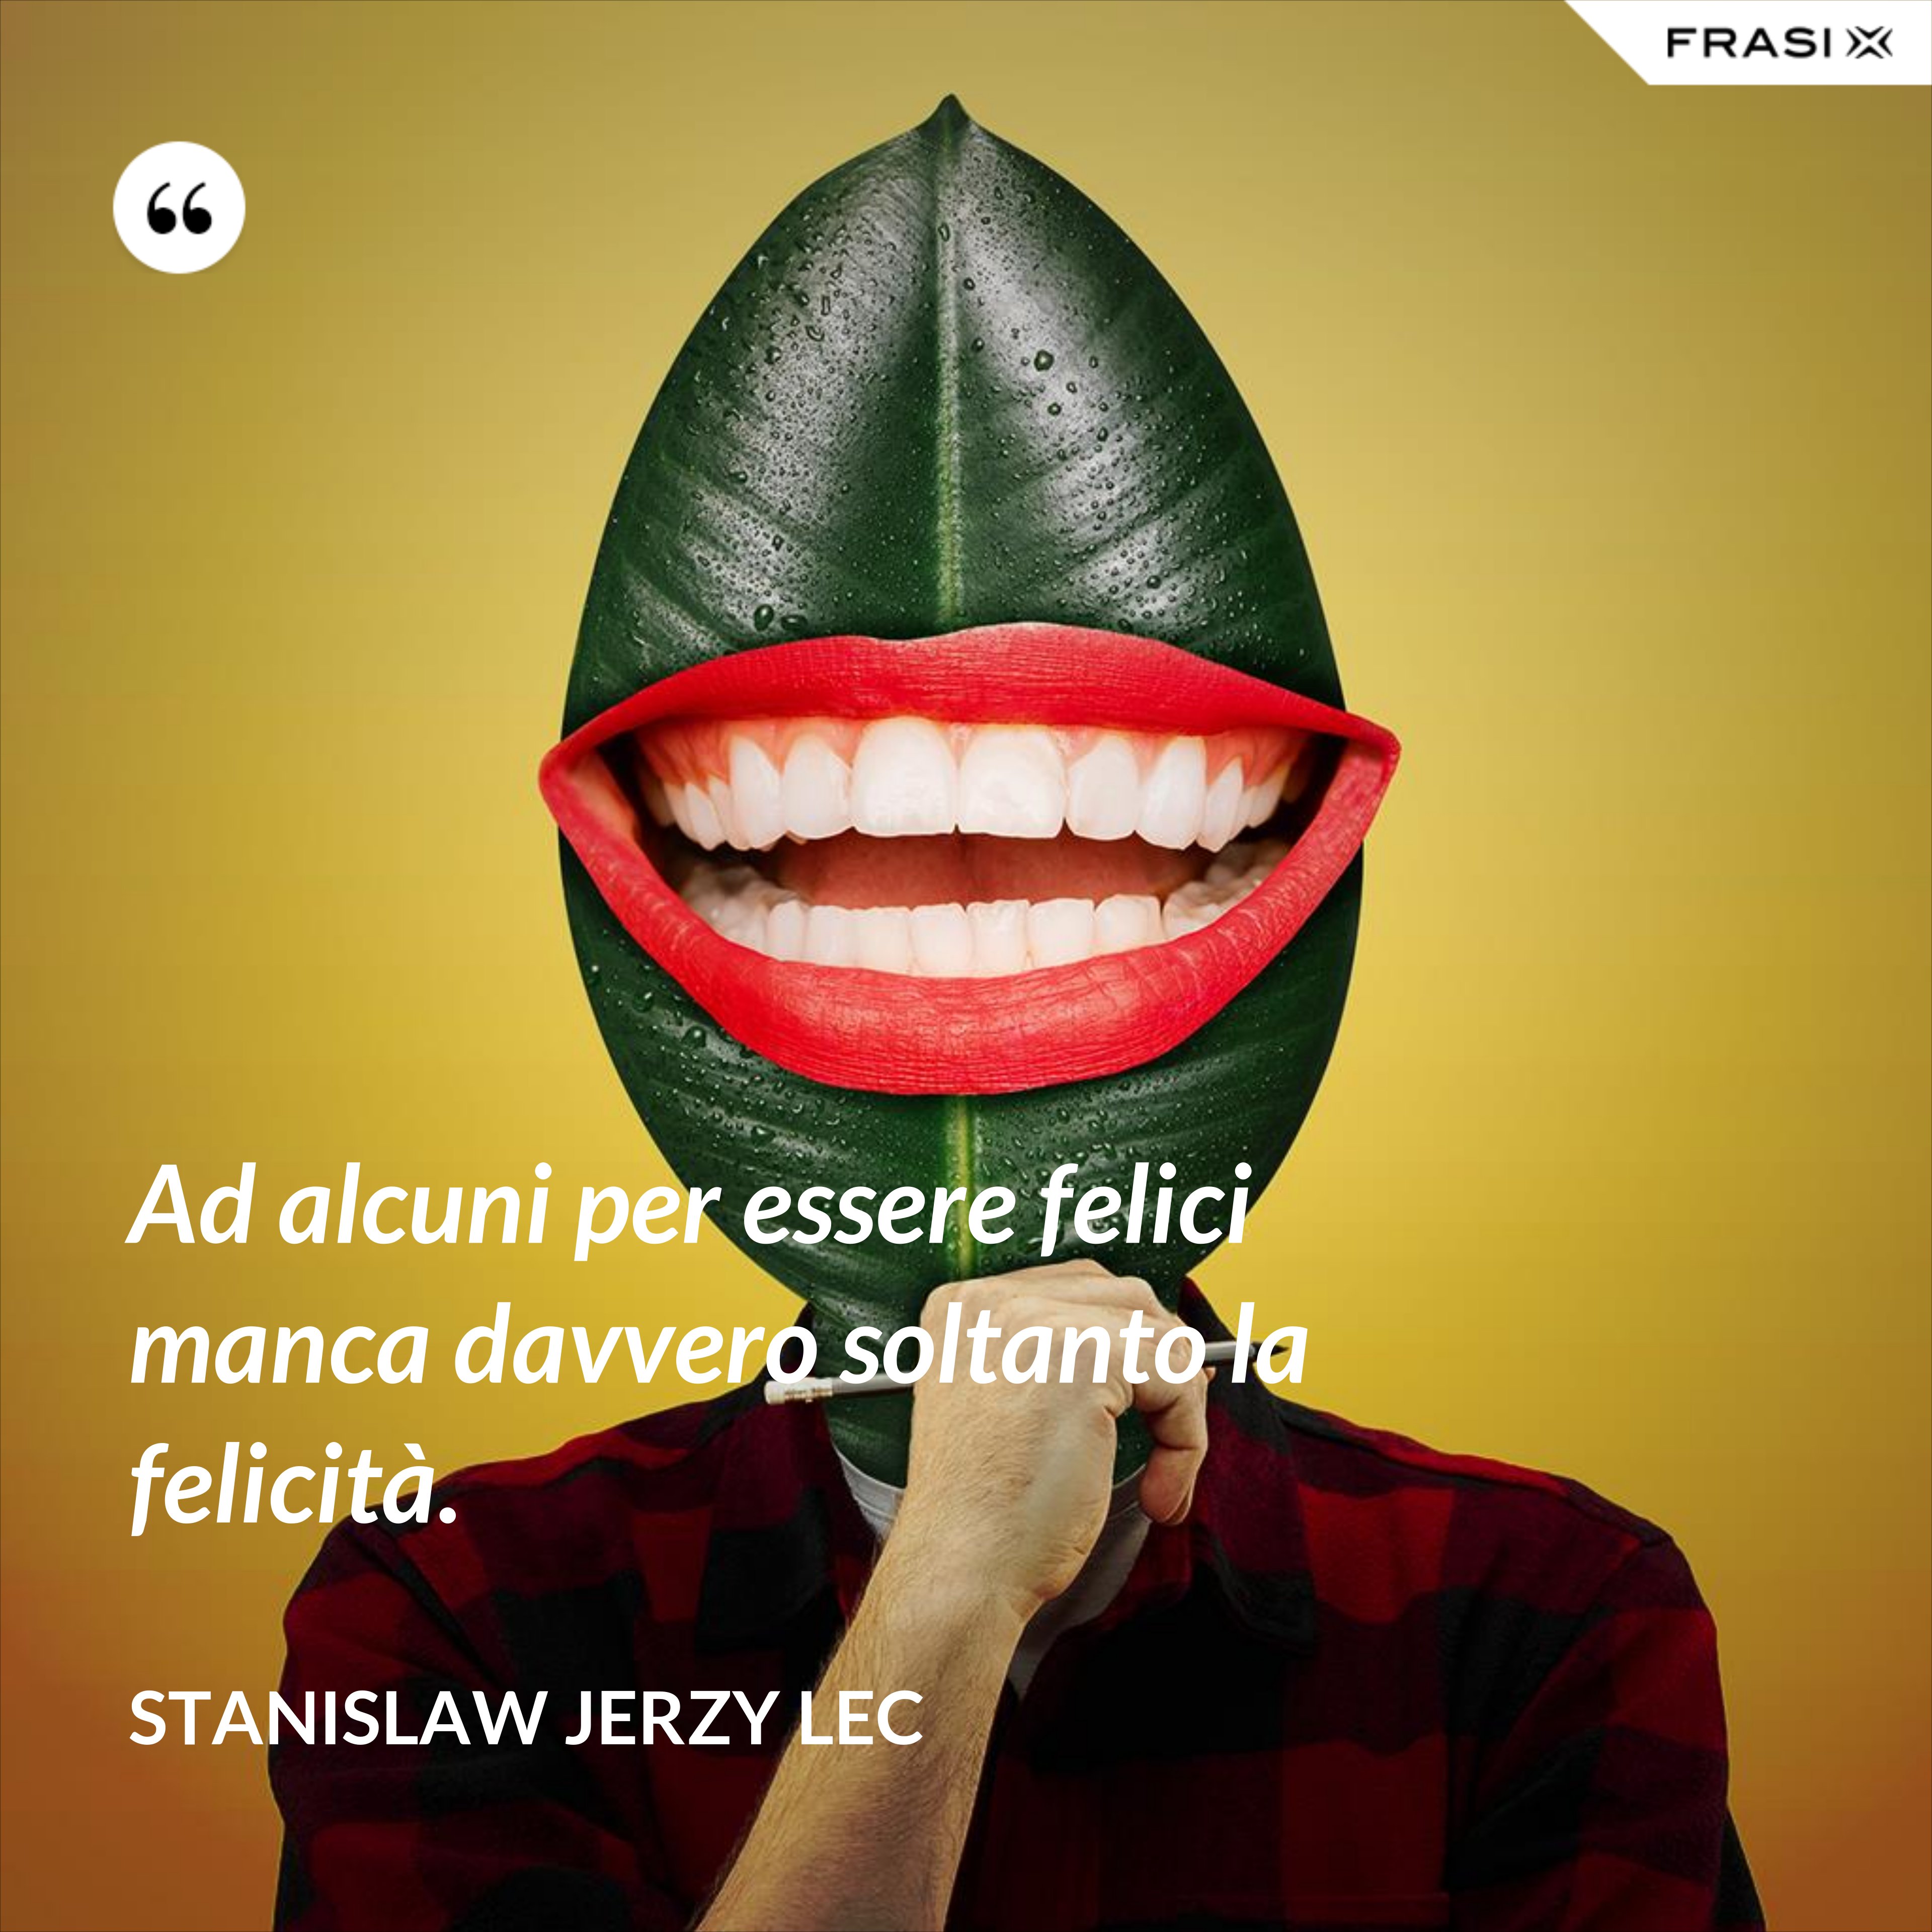 Ad alcuni per essere felici manca davvero soltanto la felicità. - Stanislaw Jerzy Lec